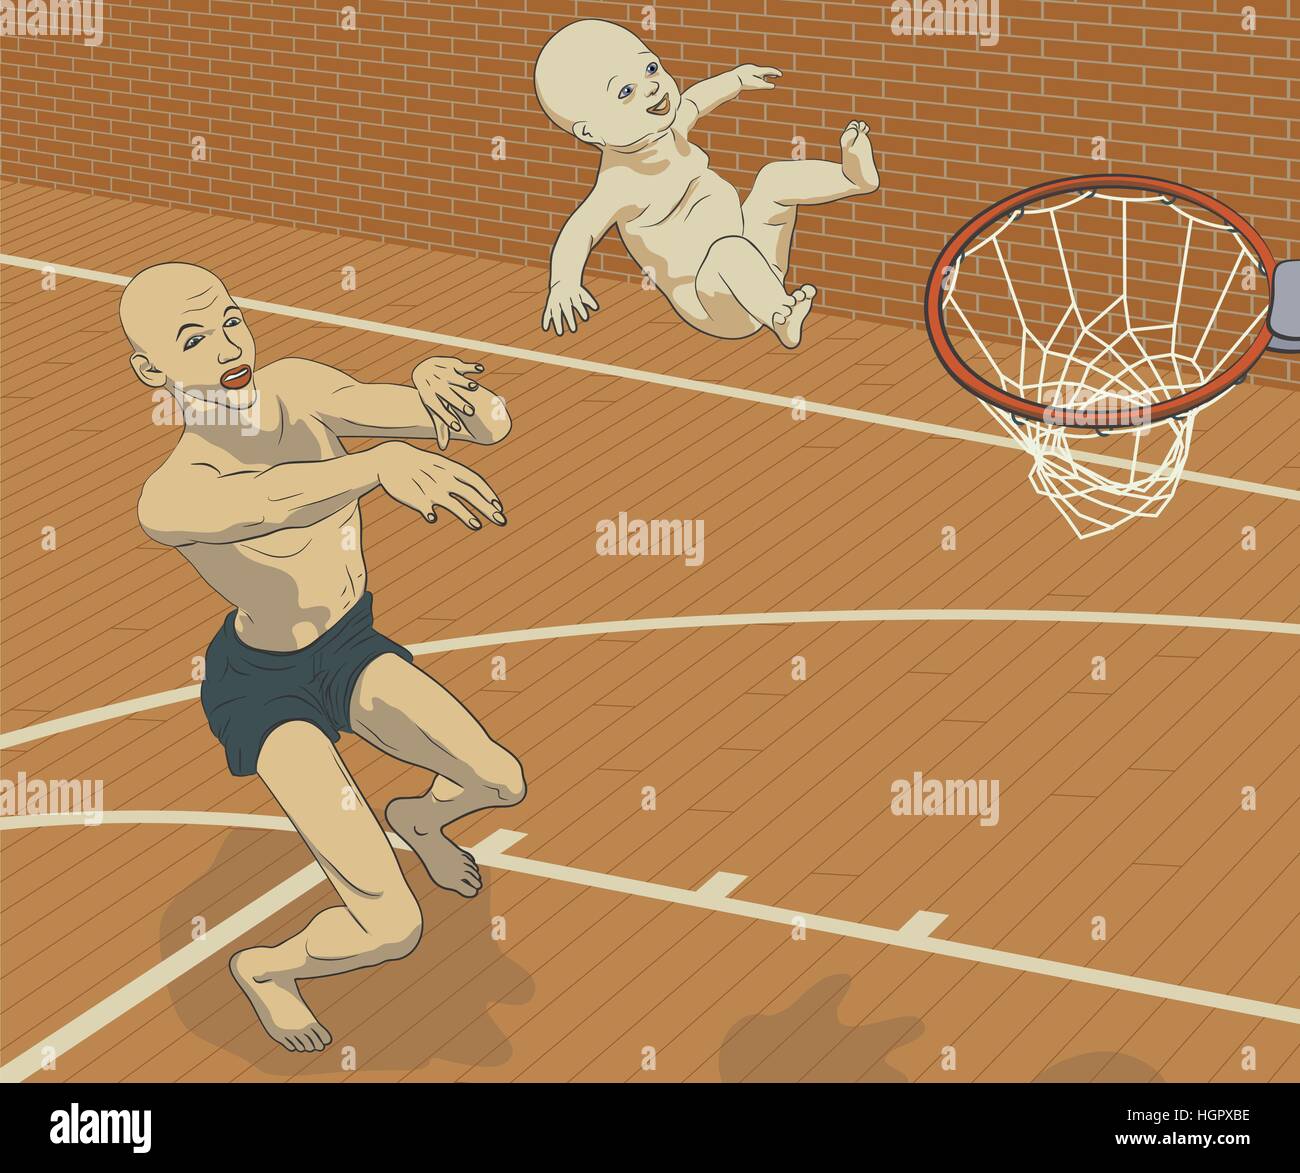 Konzept-Vektor-Illustration eines Mannes sein lächelndes Baby auf einen Basketballkorb werfen, als ob versucht, seine Ziele durch sein Kind oder seine schieben Stock Vektor